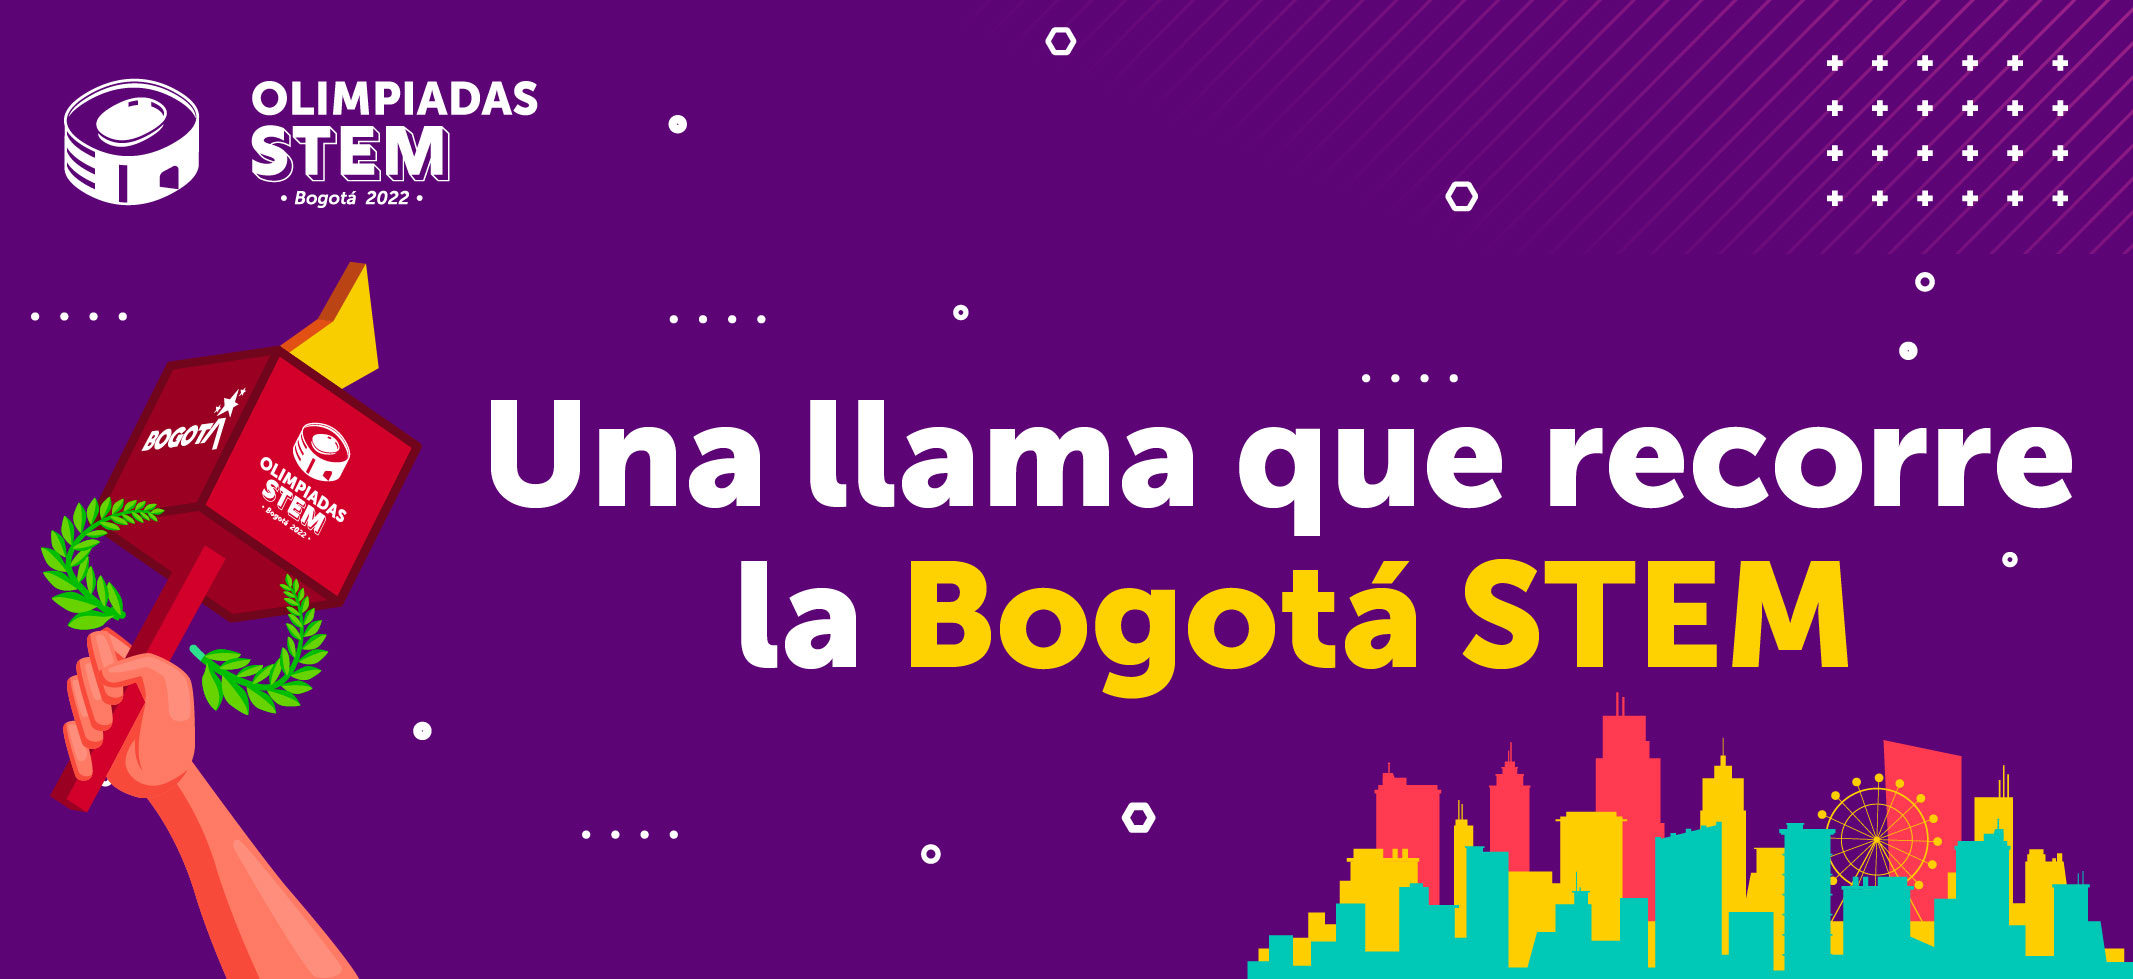 Olimpiadas STEM Bogotá 2022